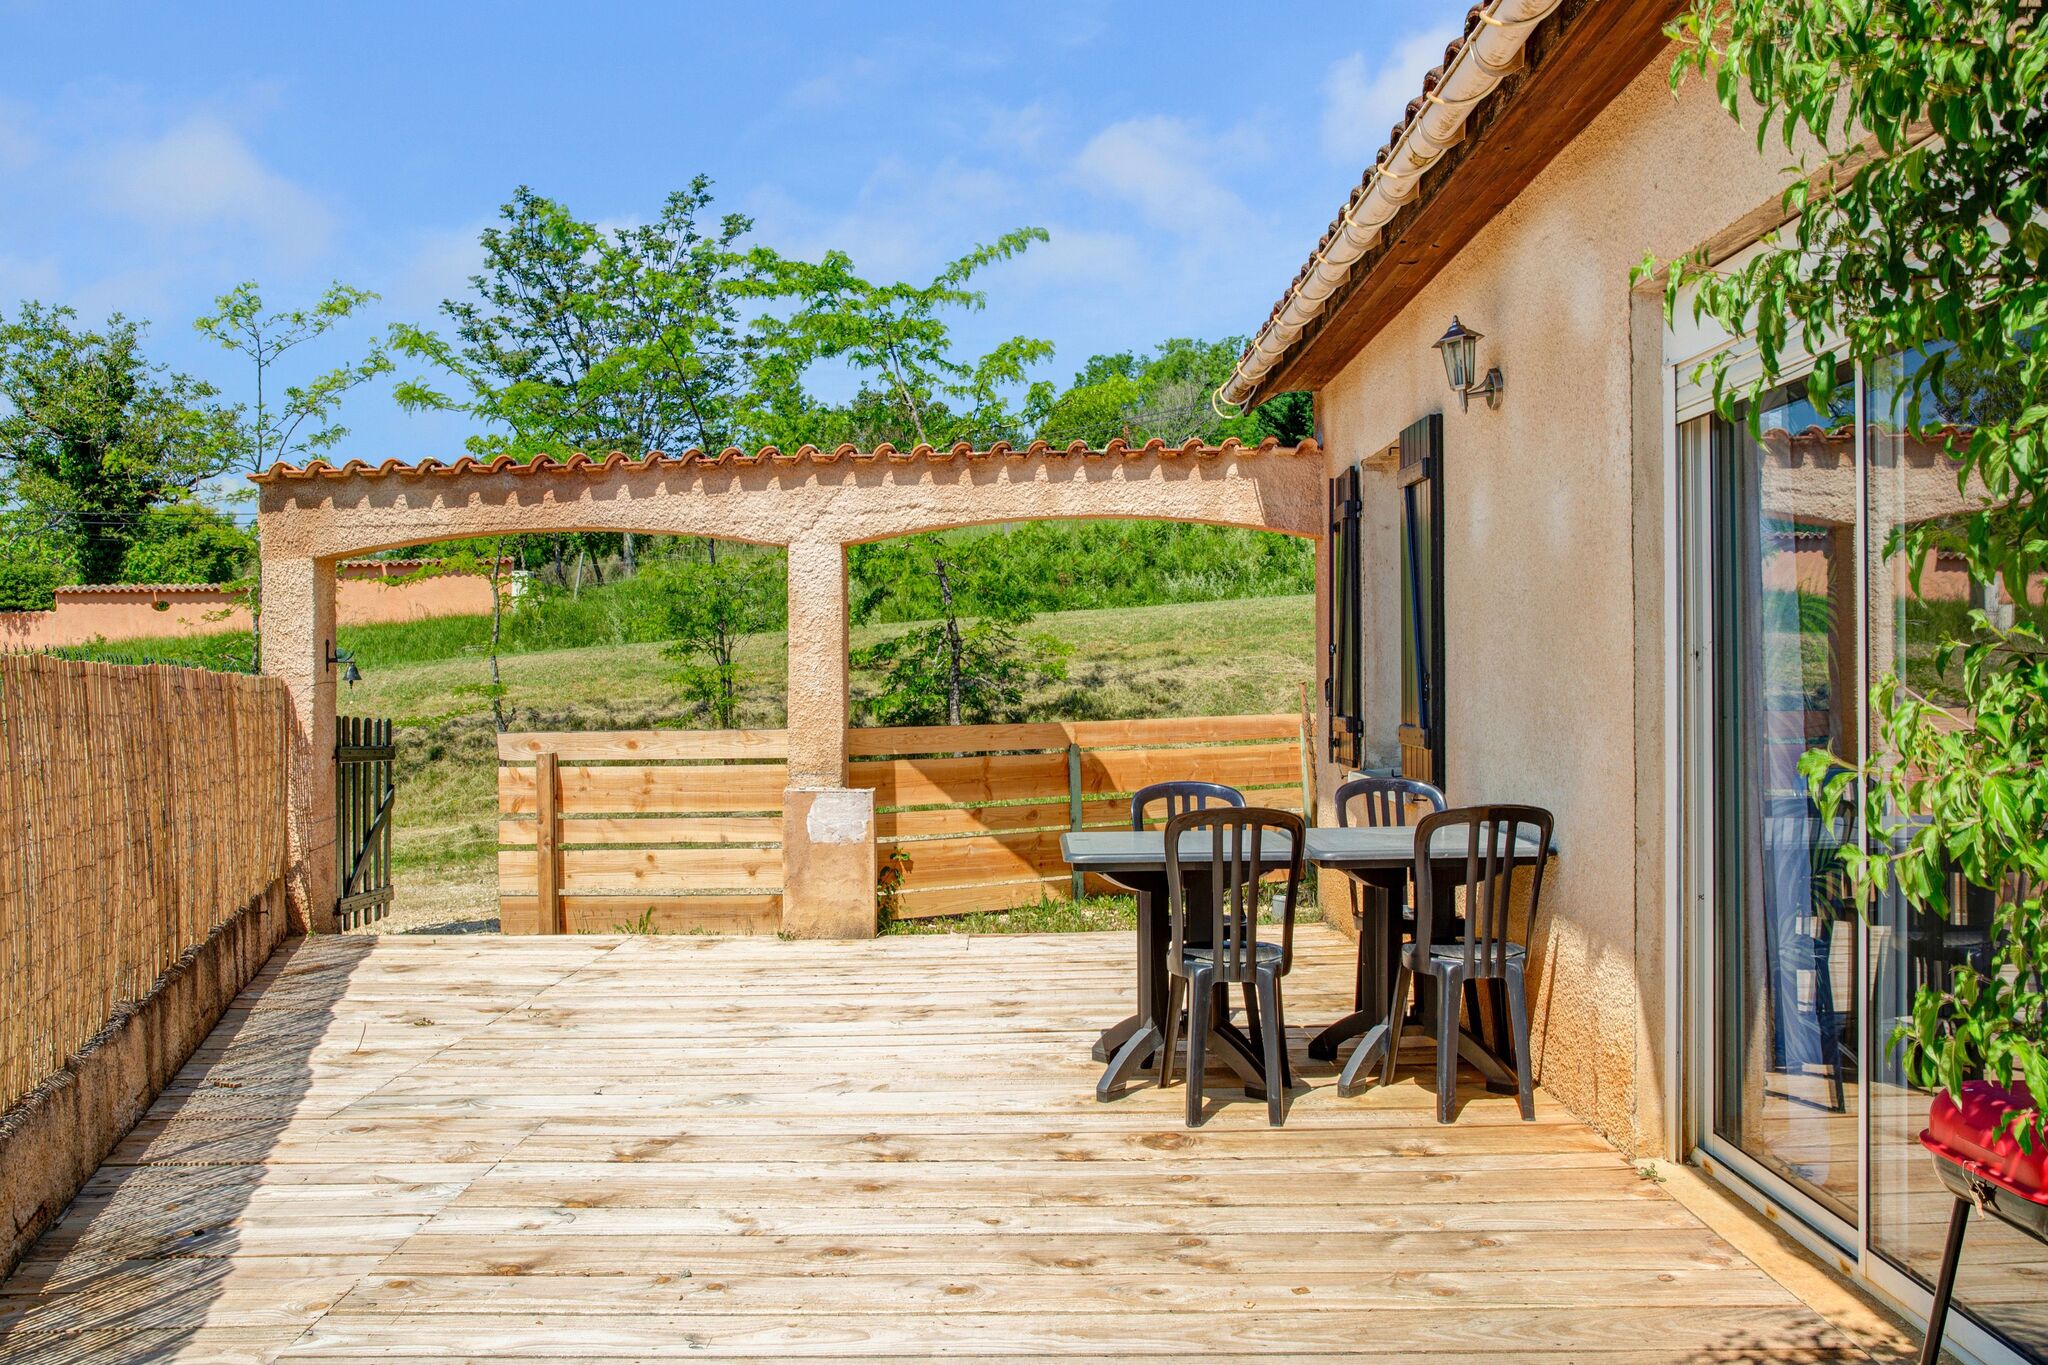 Gîte indépendant avec une belle vue sur les plus beaux endroits de la Dordogne.